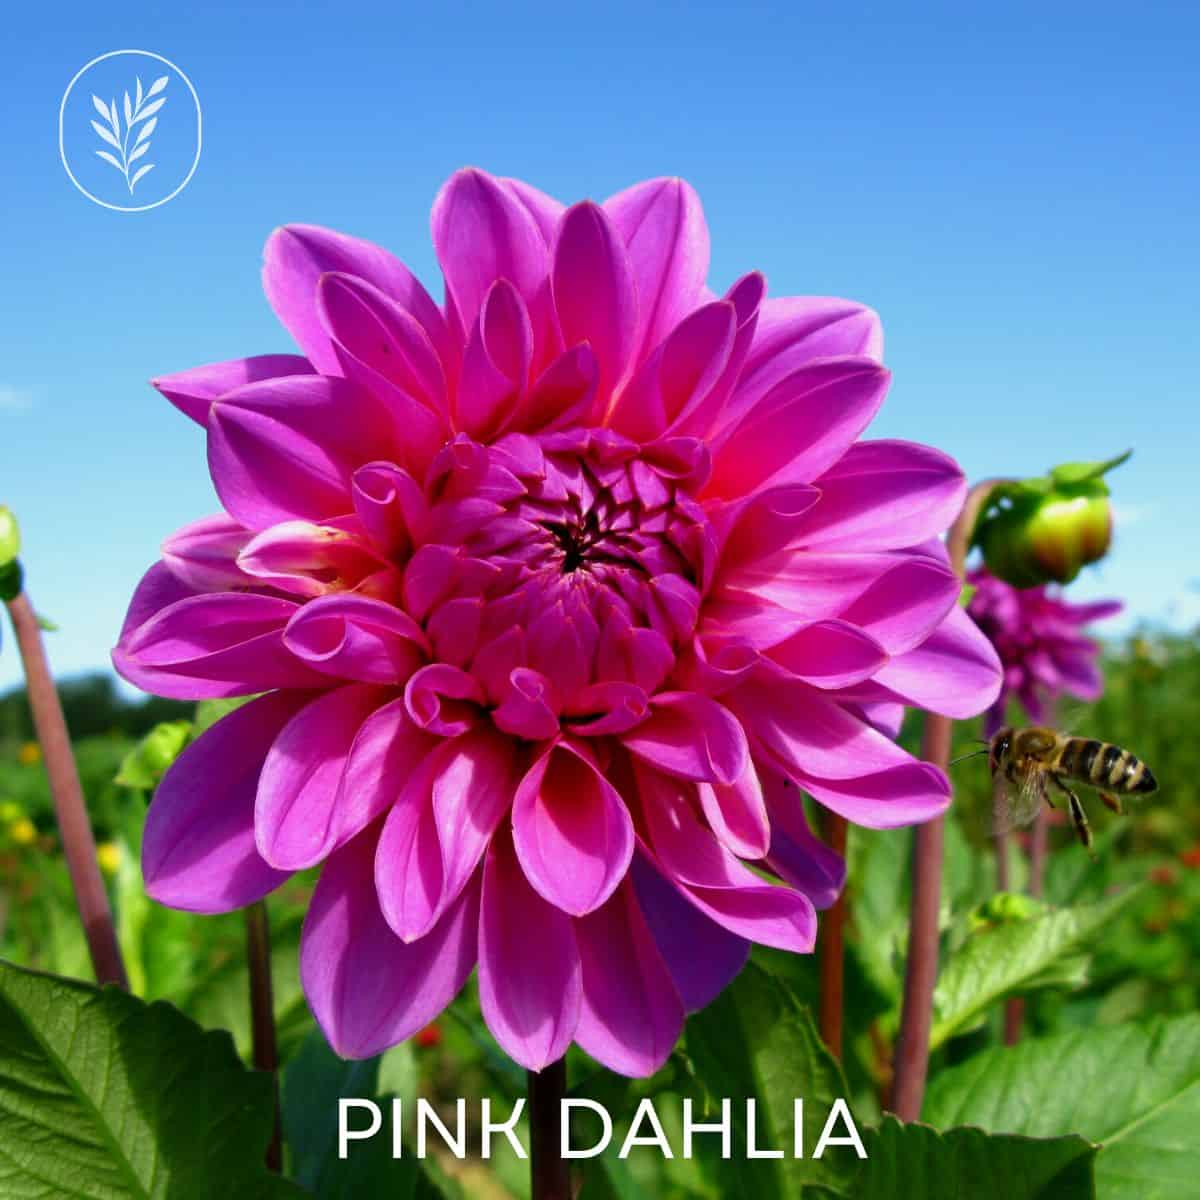 Pink dahlia via @home4theharvest